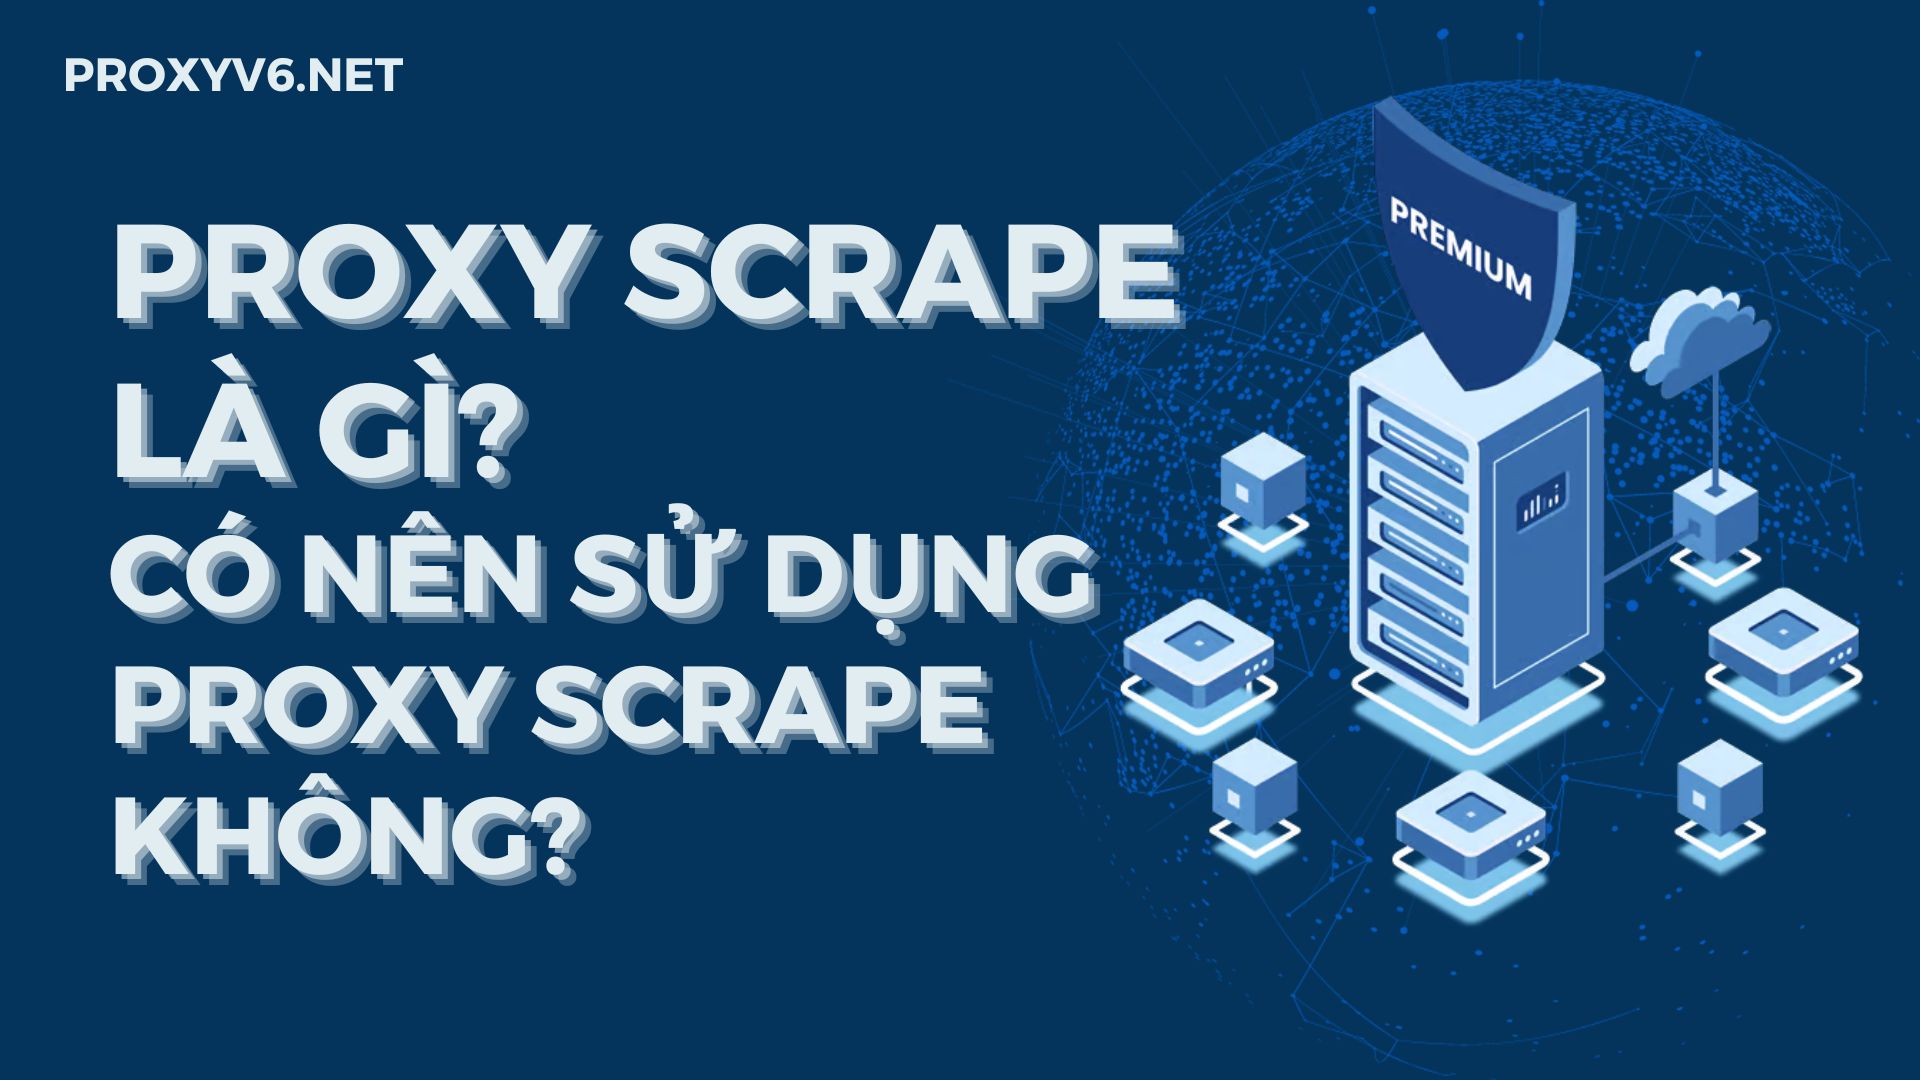 Proxy Scrape là gì? Có nên sử dụng Proxy Scrape không?